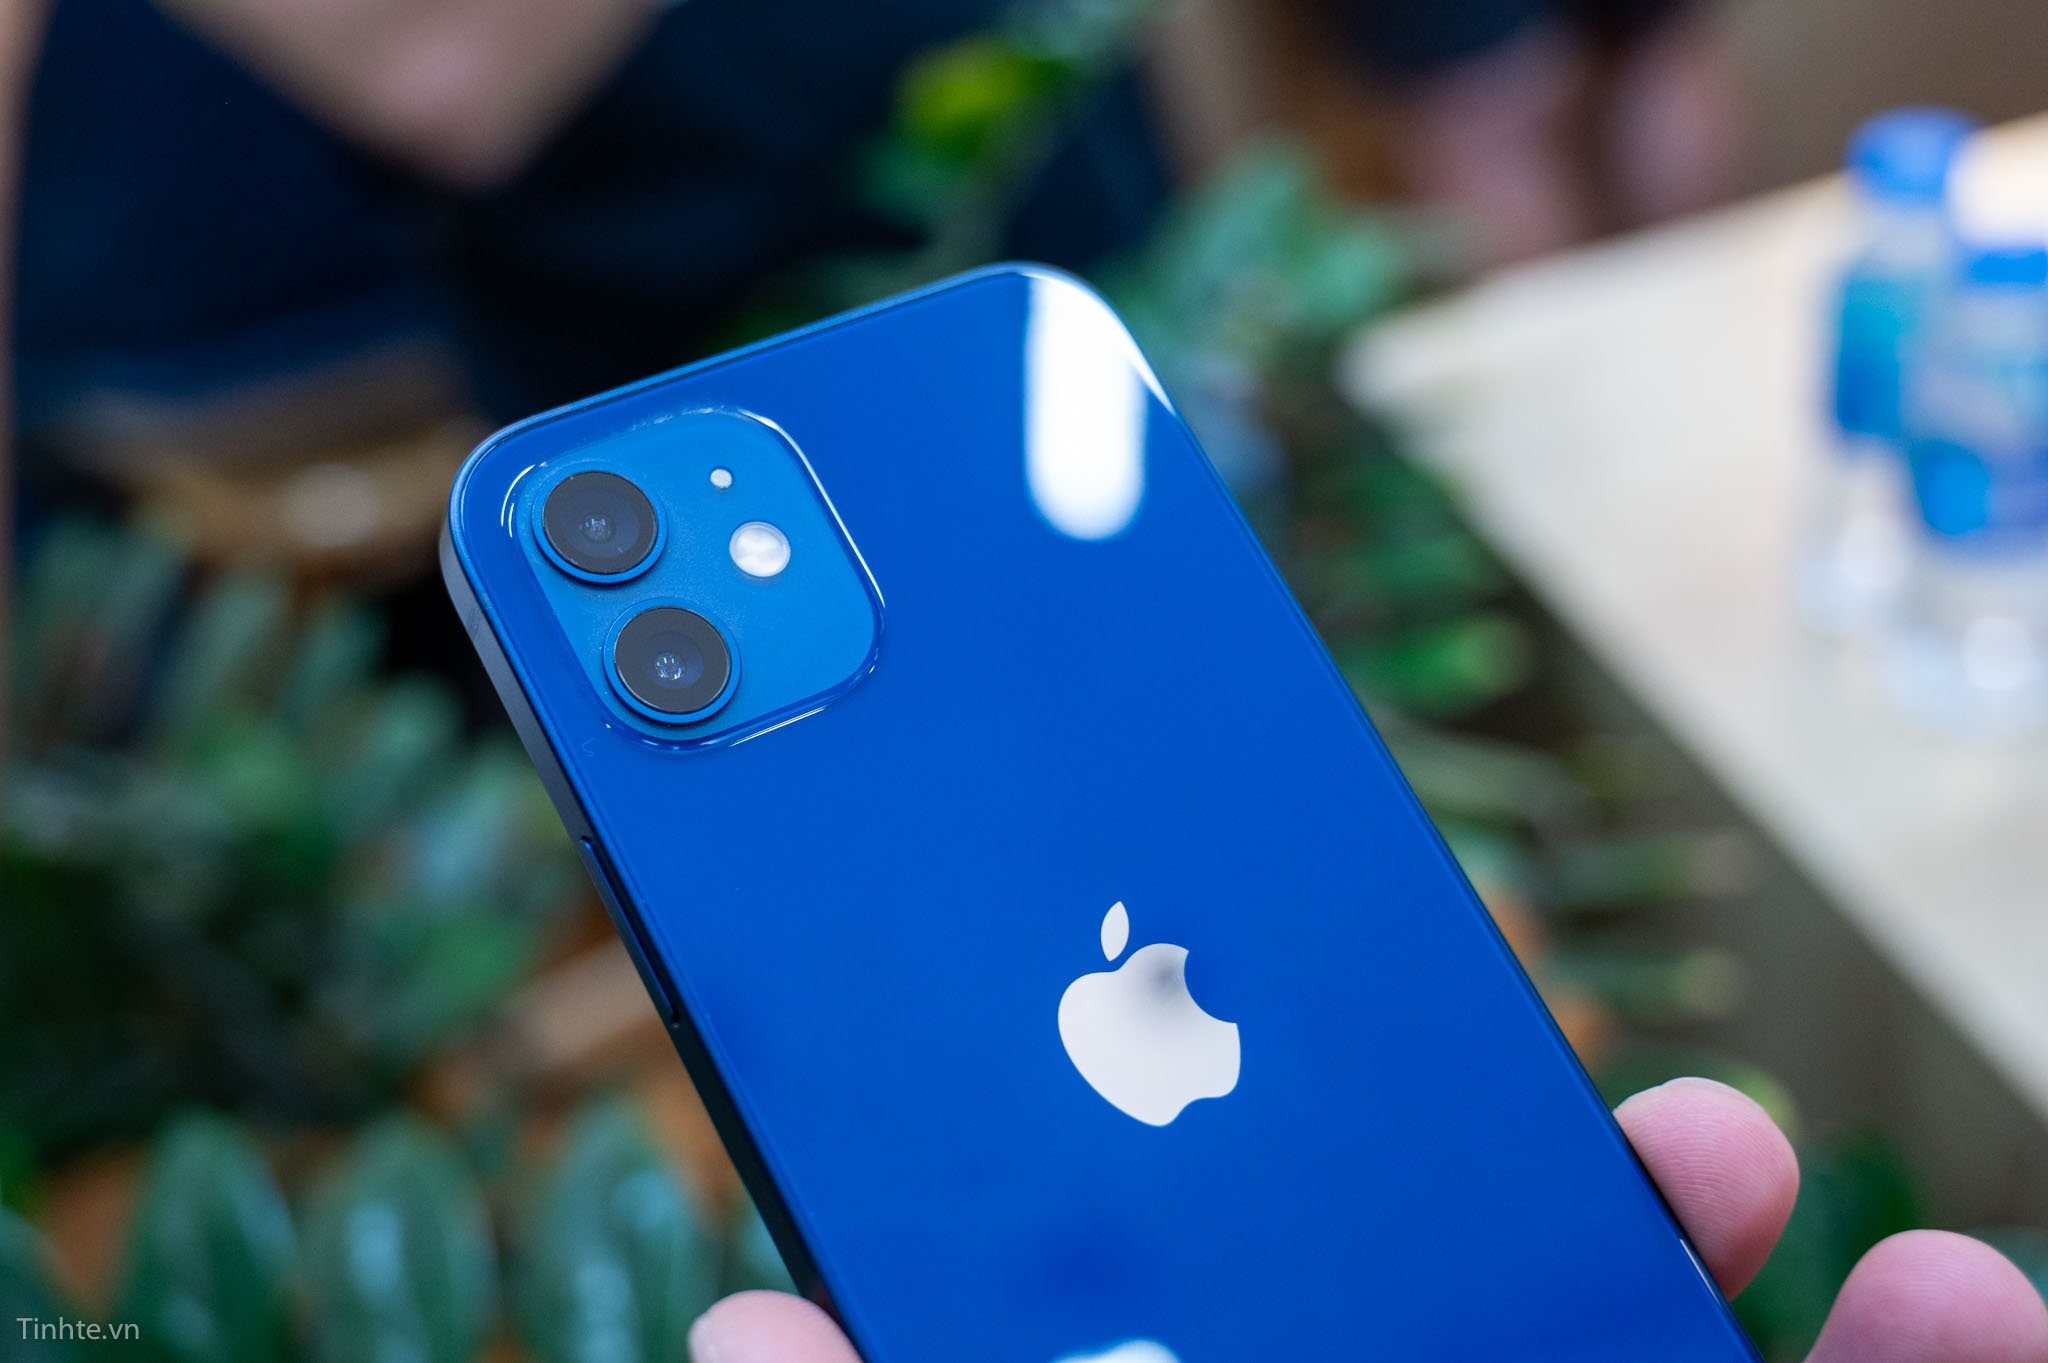 iPhone 12 màu xanh dương – Điện thoại thông minh iPhone 12 màu xanh dương là một sản phẩm cao cấp của Apple. Thiết bị này được trang bị các tính năng tiên tiến nhất, bao gồm màn hình OLED siêu mỏng và siêu sáng, máy ảnh chất lượng cao, độ bền cao và hỗ trợ 5G. Với thiết kế sang trọng và đặc biệt là màu xanh dương độc đáo, iPhone 12 màu xanh dương chắc chắn sẽ làm hài lòng mọi người.